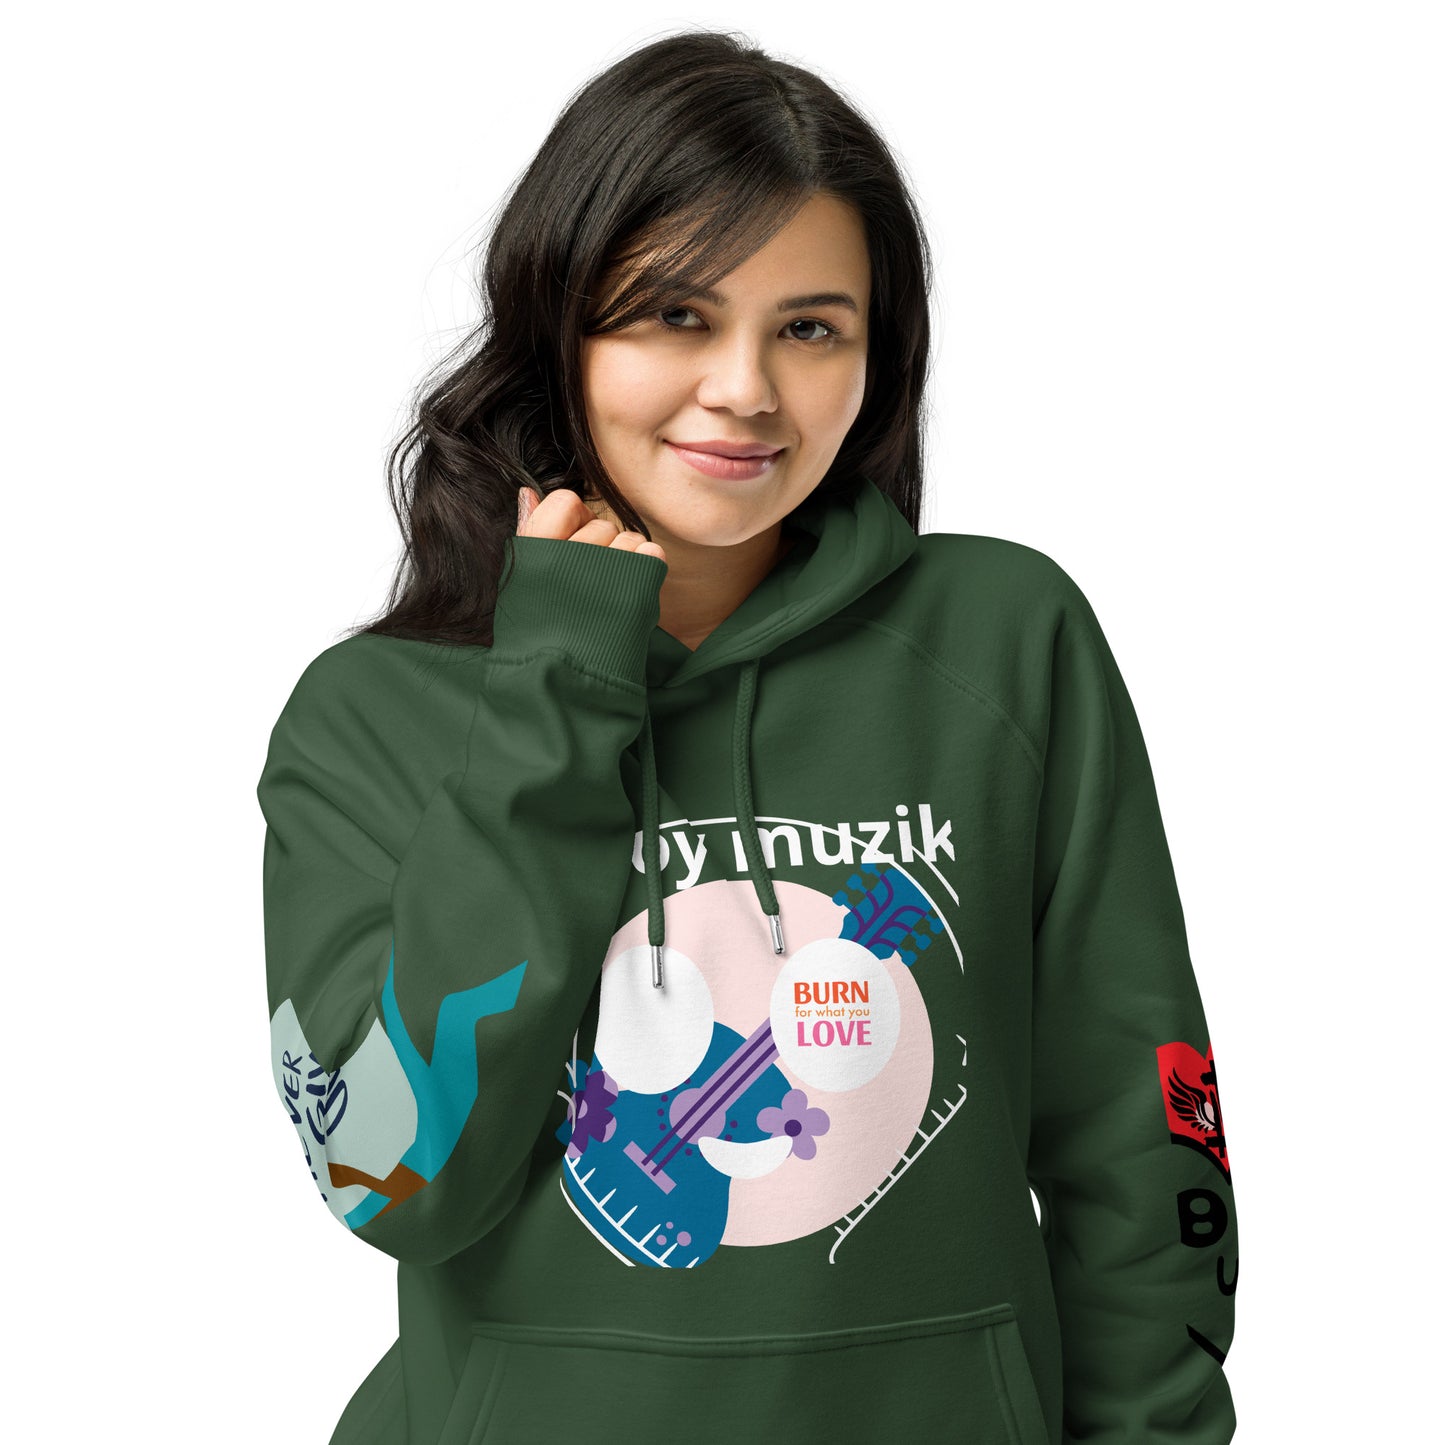 Unisex 'Estoy Musik ' hoodie